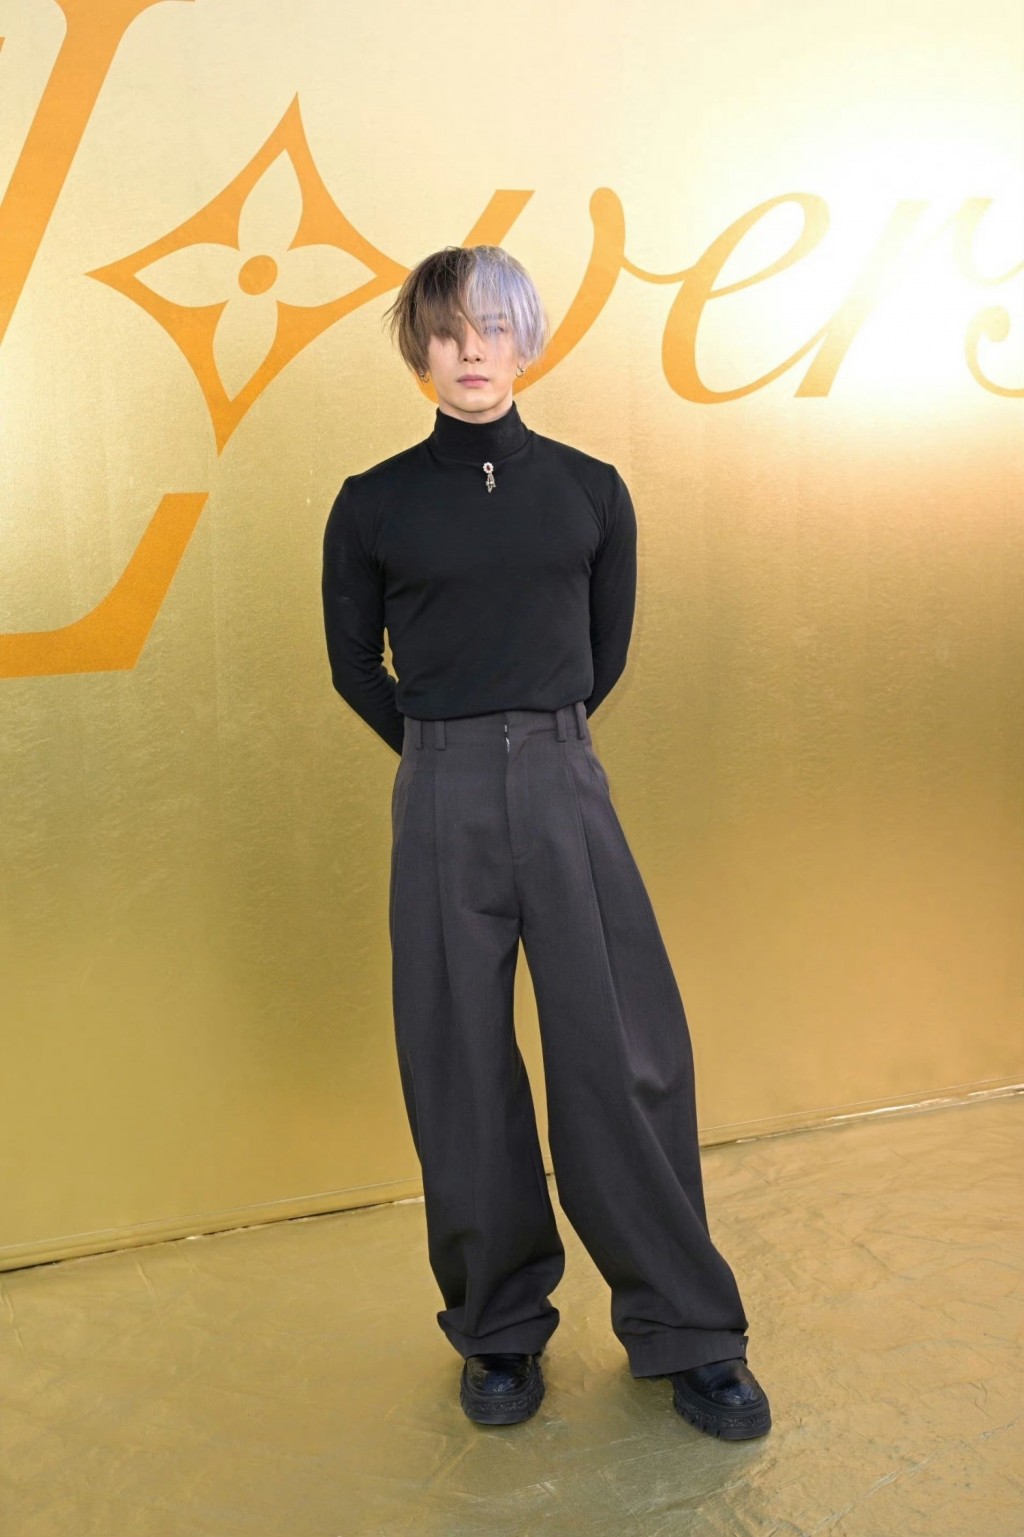 王嘉尔简单黑色套装个性风格活动照图片